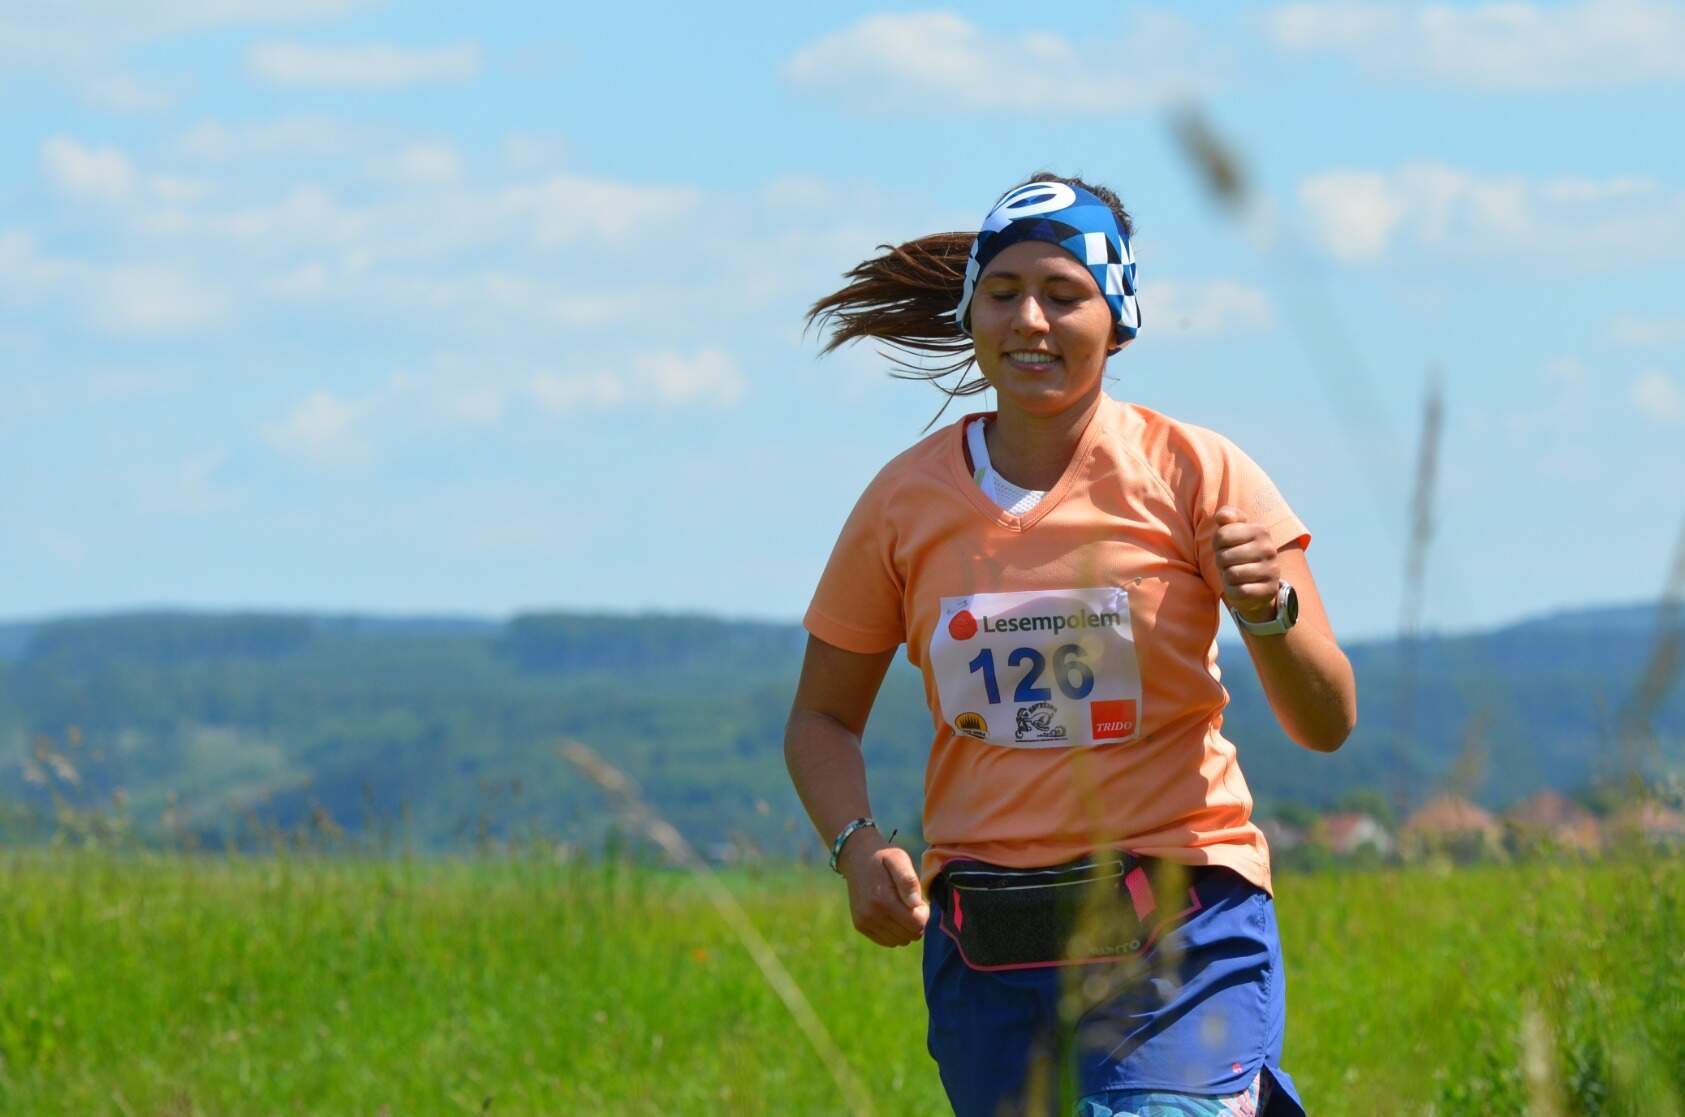 Veselský pouťový běh Lesempolem – mistrovství ČR v ultramaratonu